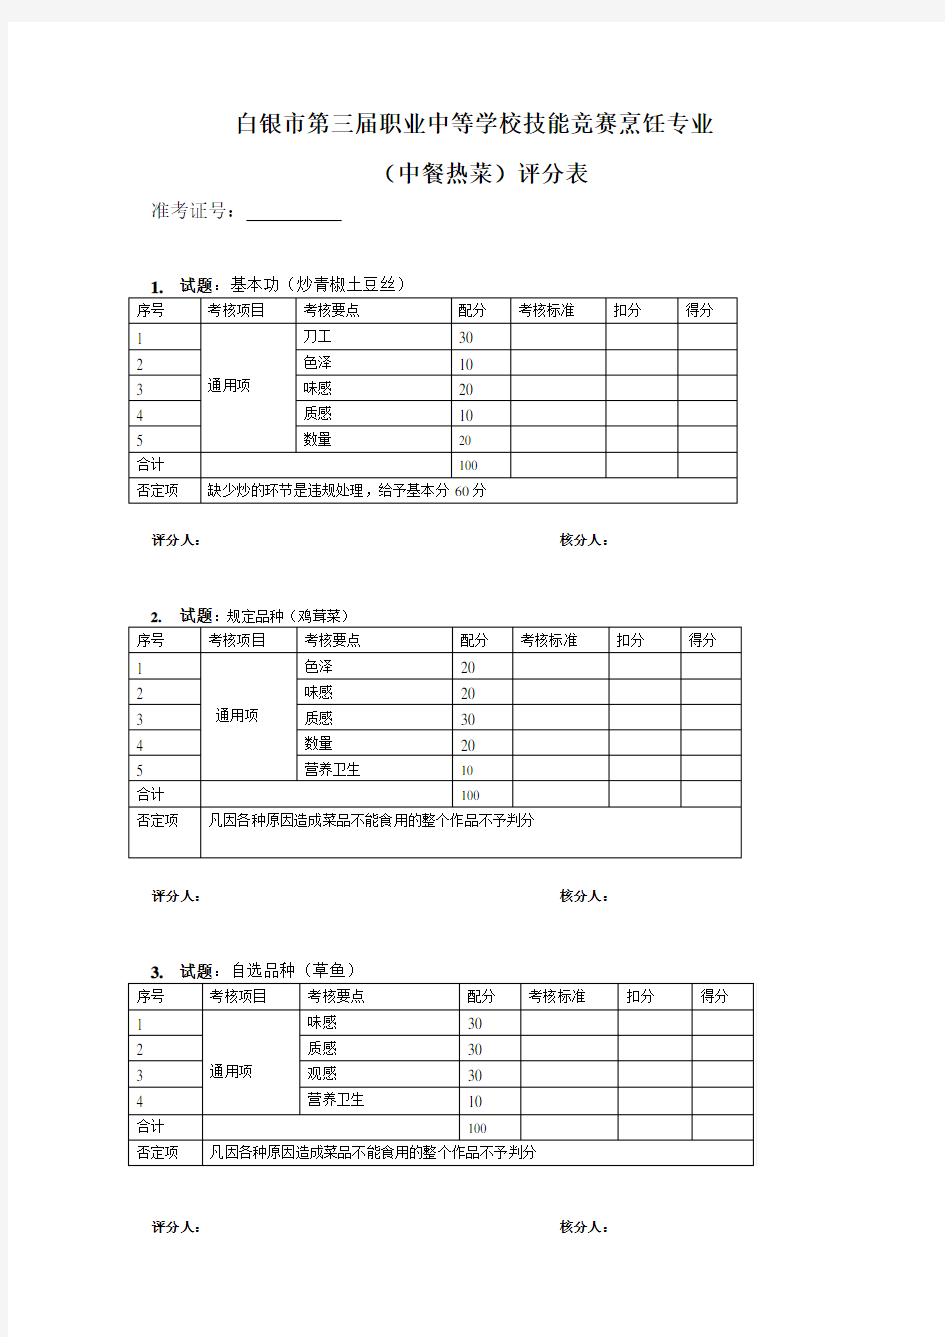 中式烹调师操作技能考核评分记录表{所有项目}(1)